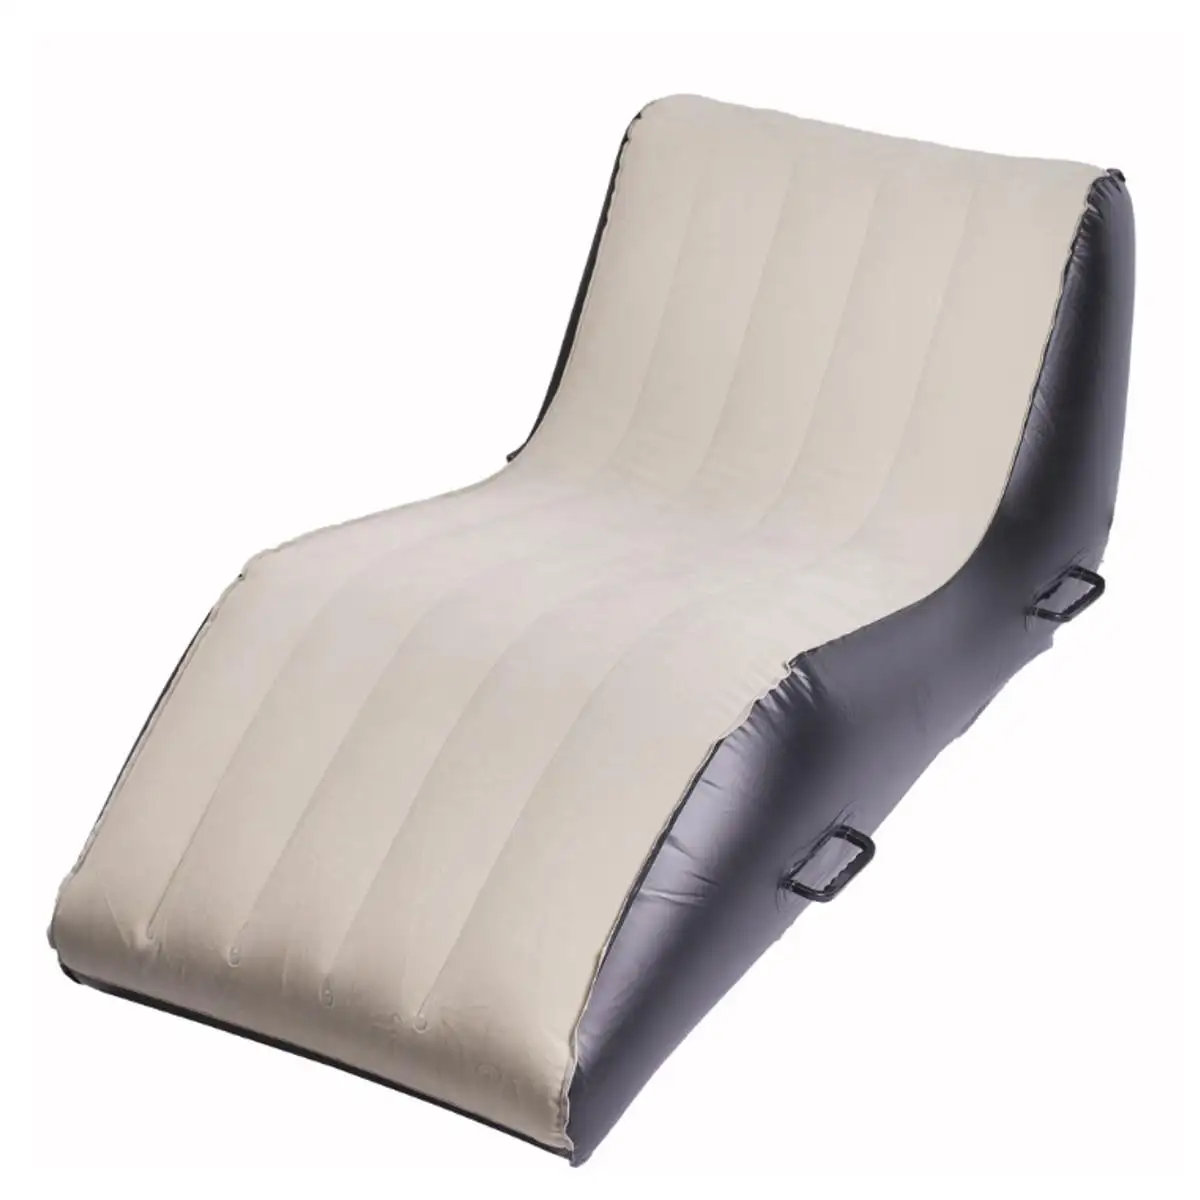 2022 Wonderful S Shape Air Cushion Inflatable Sofa Comfortable Bed Wedge PVC Flocking Chair Furniture Beach Garden